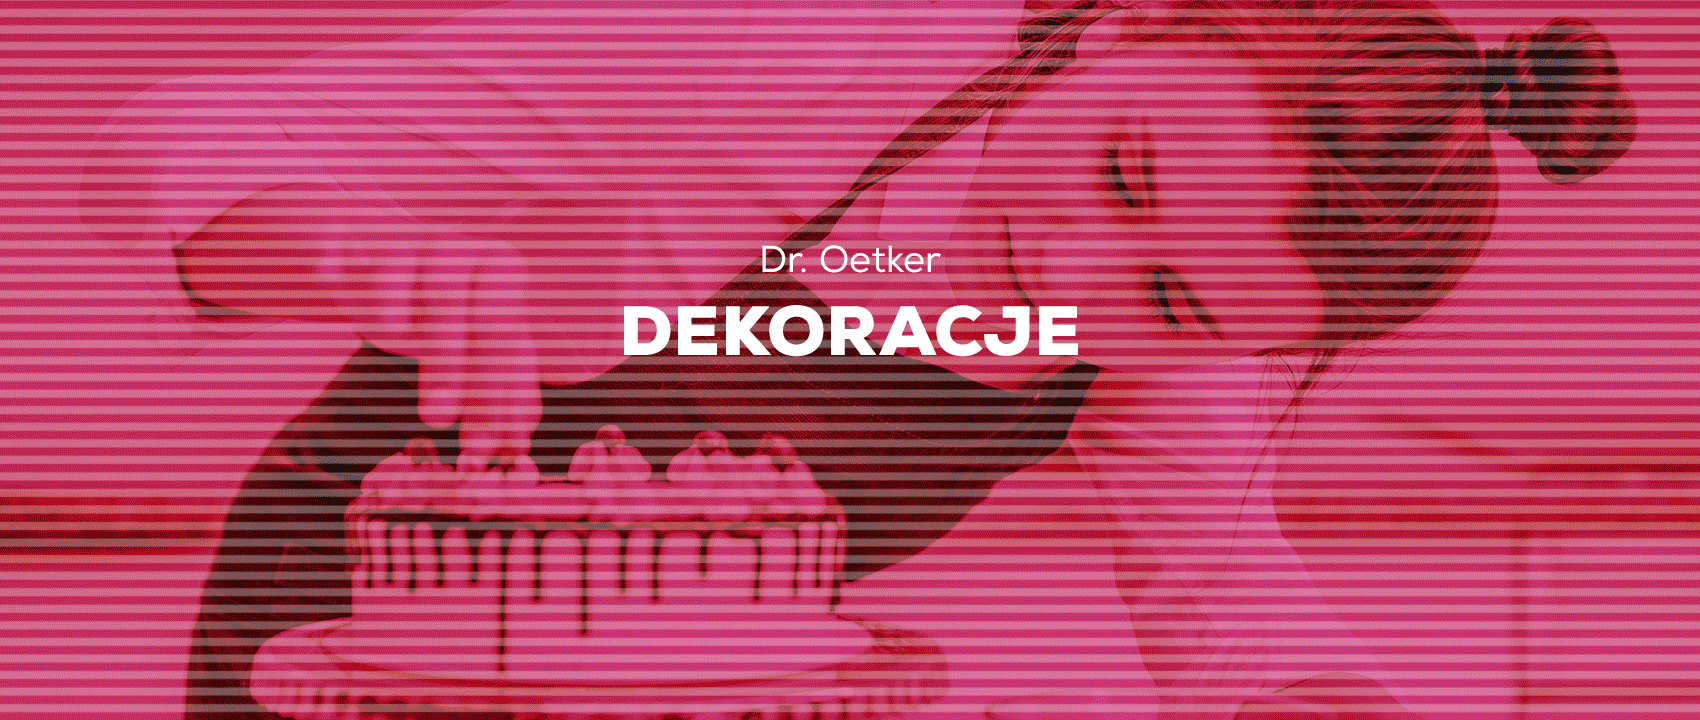 DR. OETKER - 